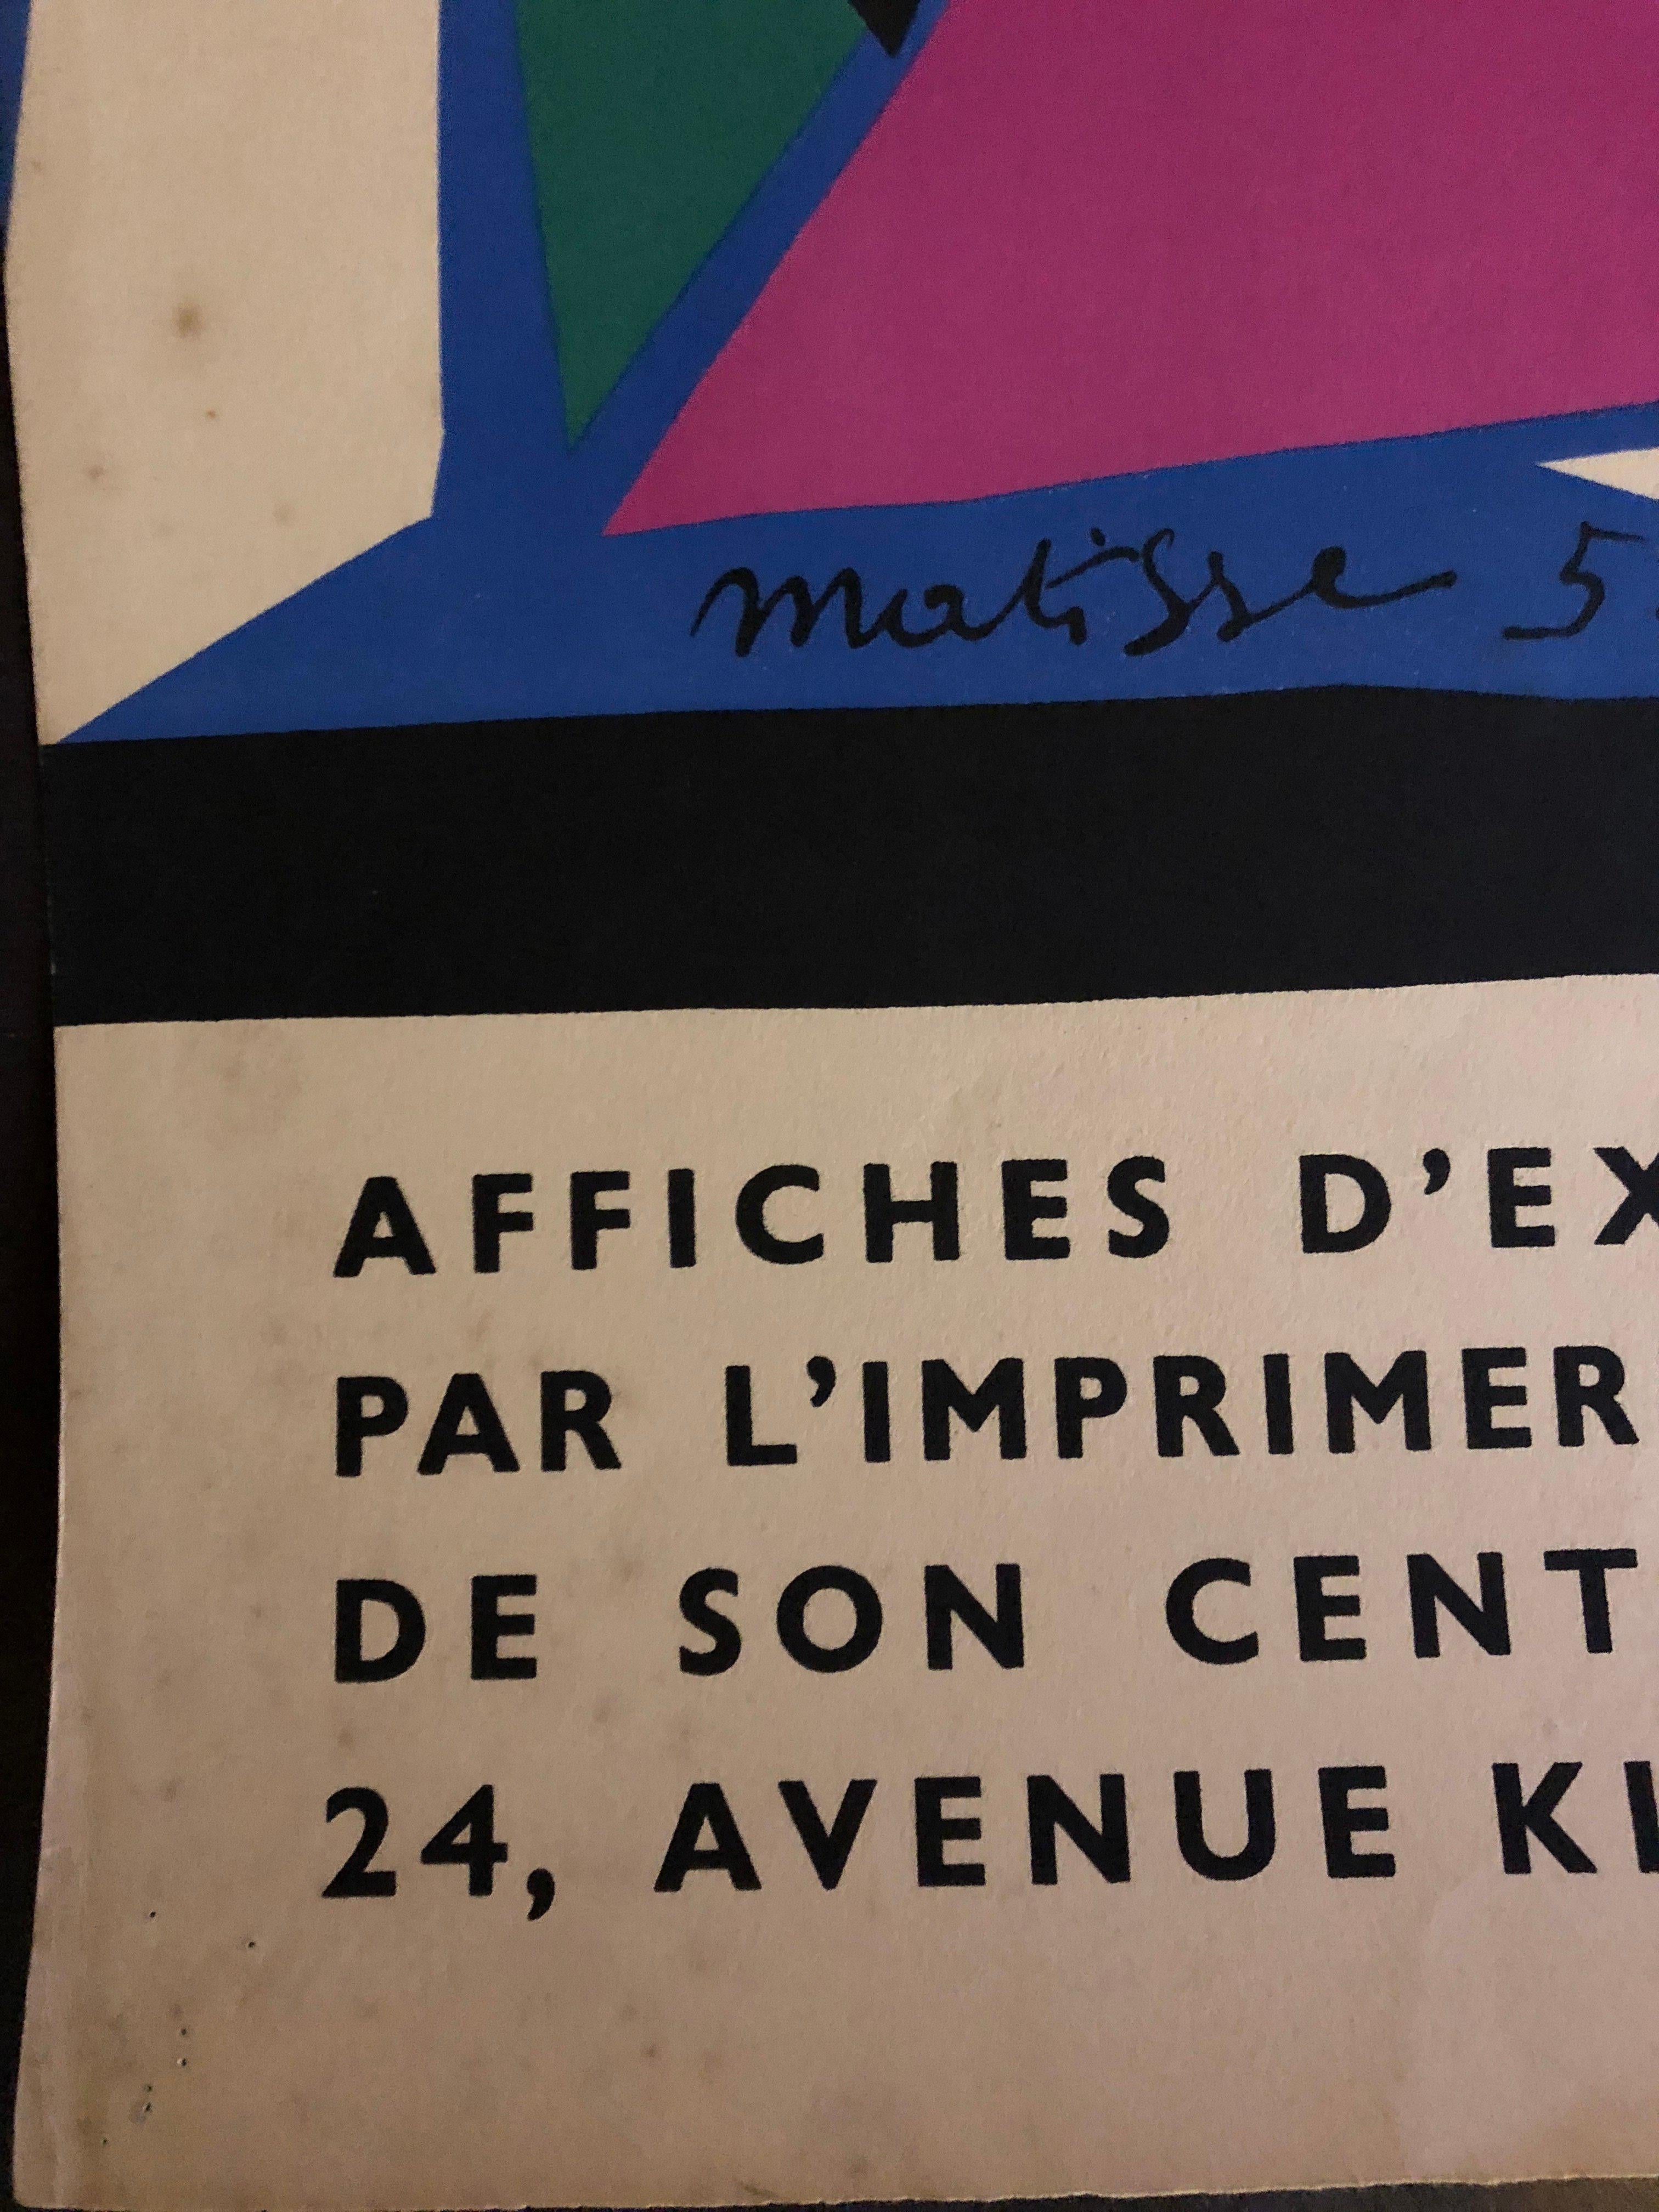 Affiches D'Expositions Réalisées Depuis 25 Ans par L'Imprimerie. Galerie Kleber, Mourlot  1957- Paris.

An original 6-colour lithograph poster after an original paper cut-out collage by Henri Matisse, made on the occasion of the centenary of Mourlot